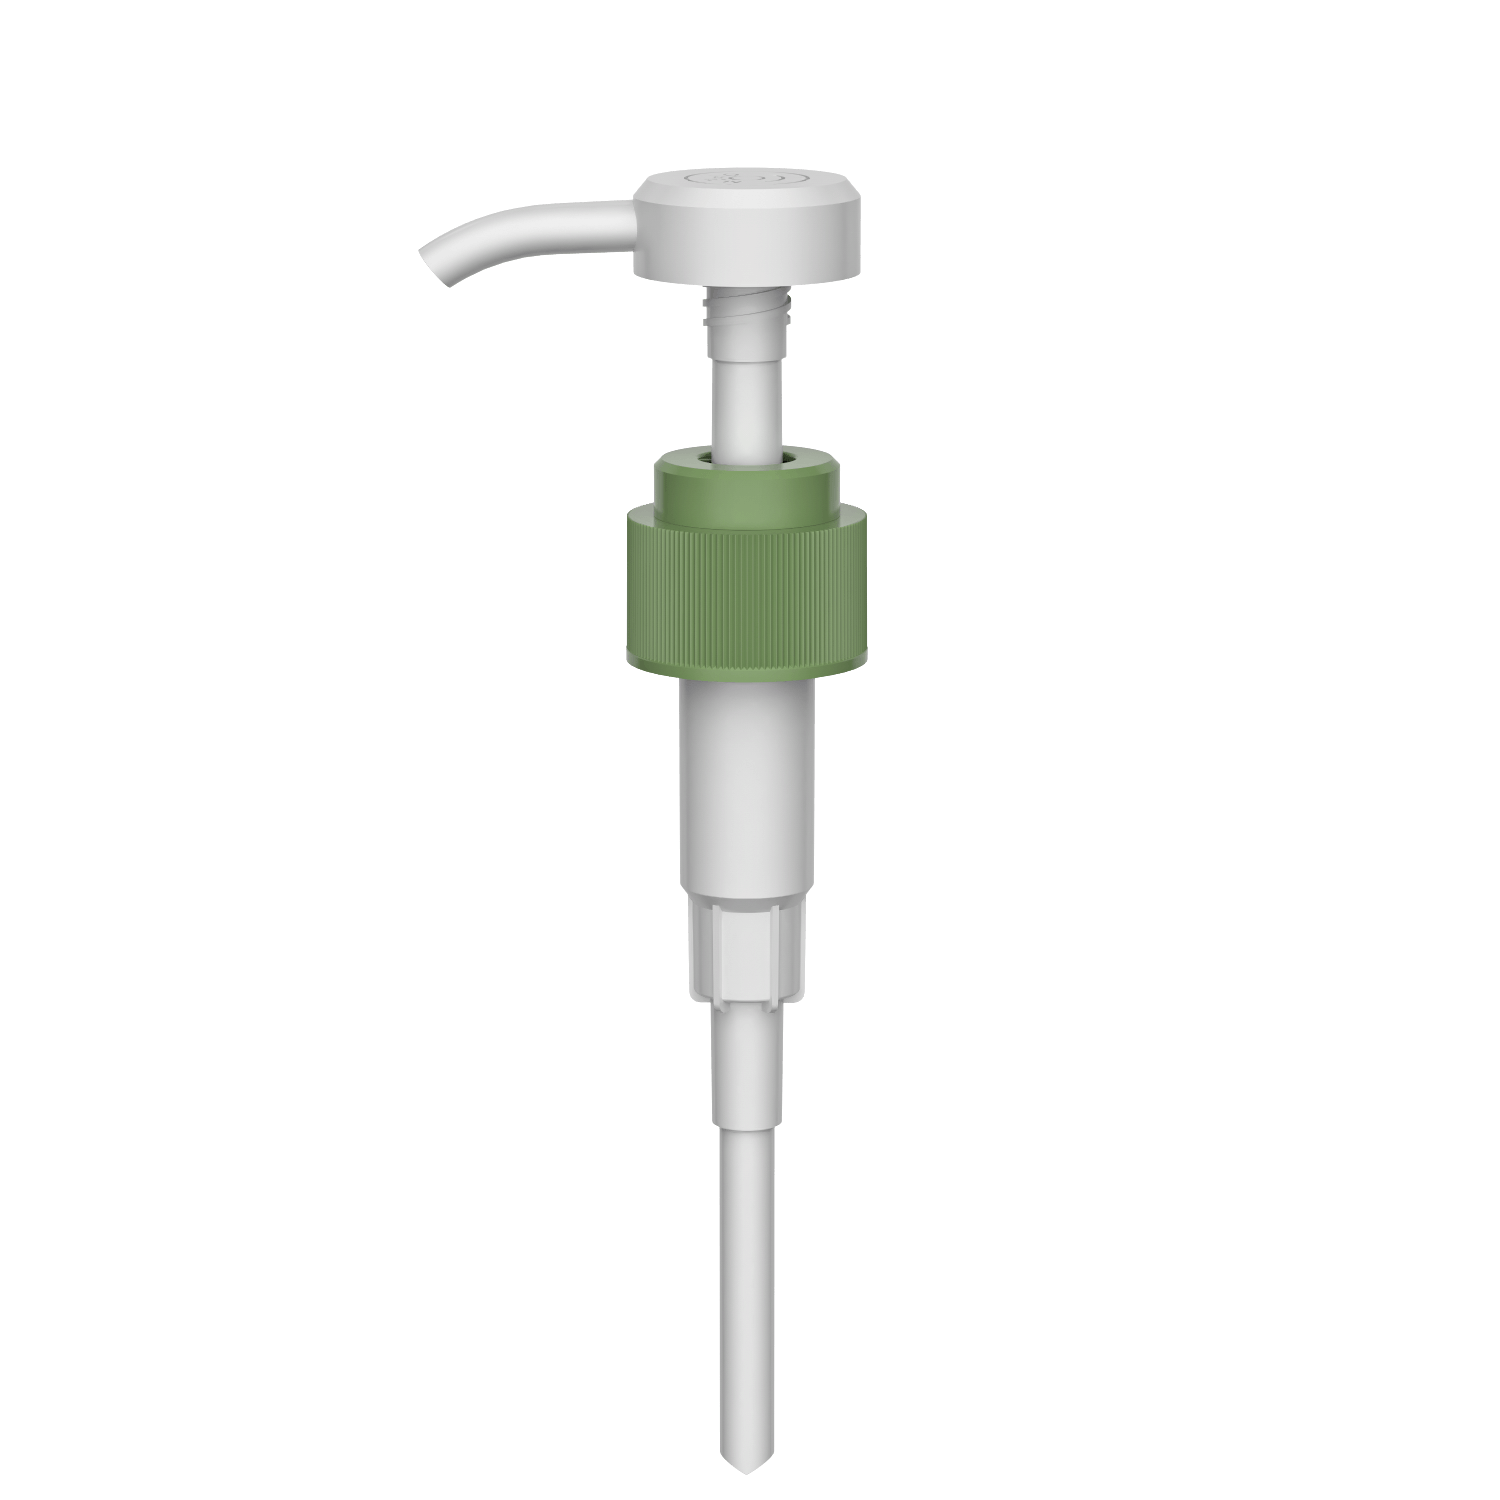 HD-608A 28/410 liquid high dosage washing shampoo output dispenser 3.5-4.0CC lotion pump